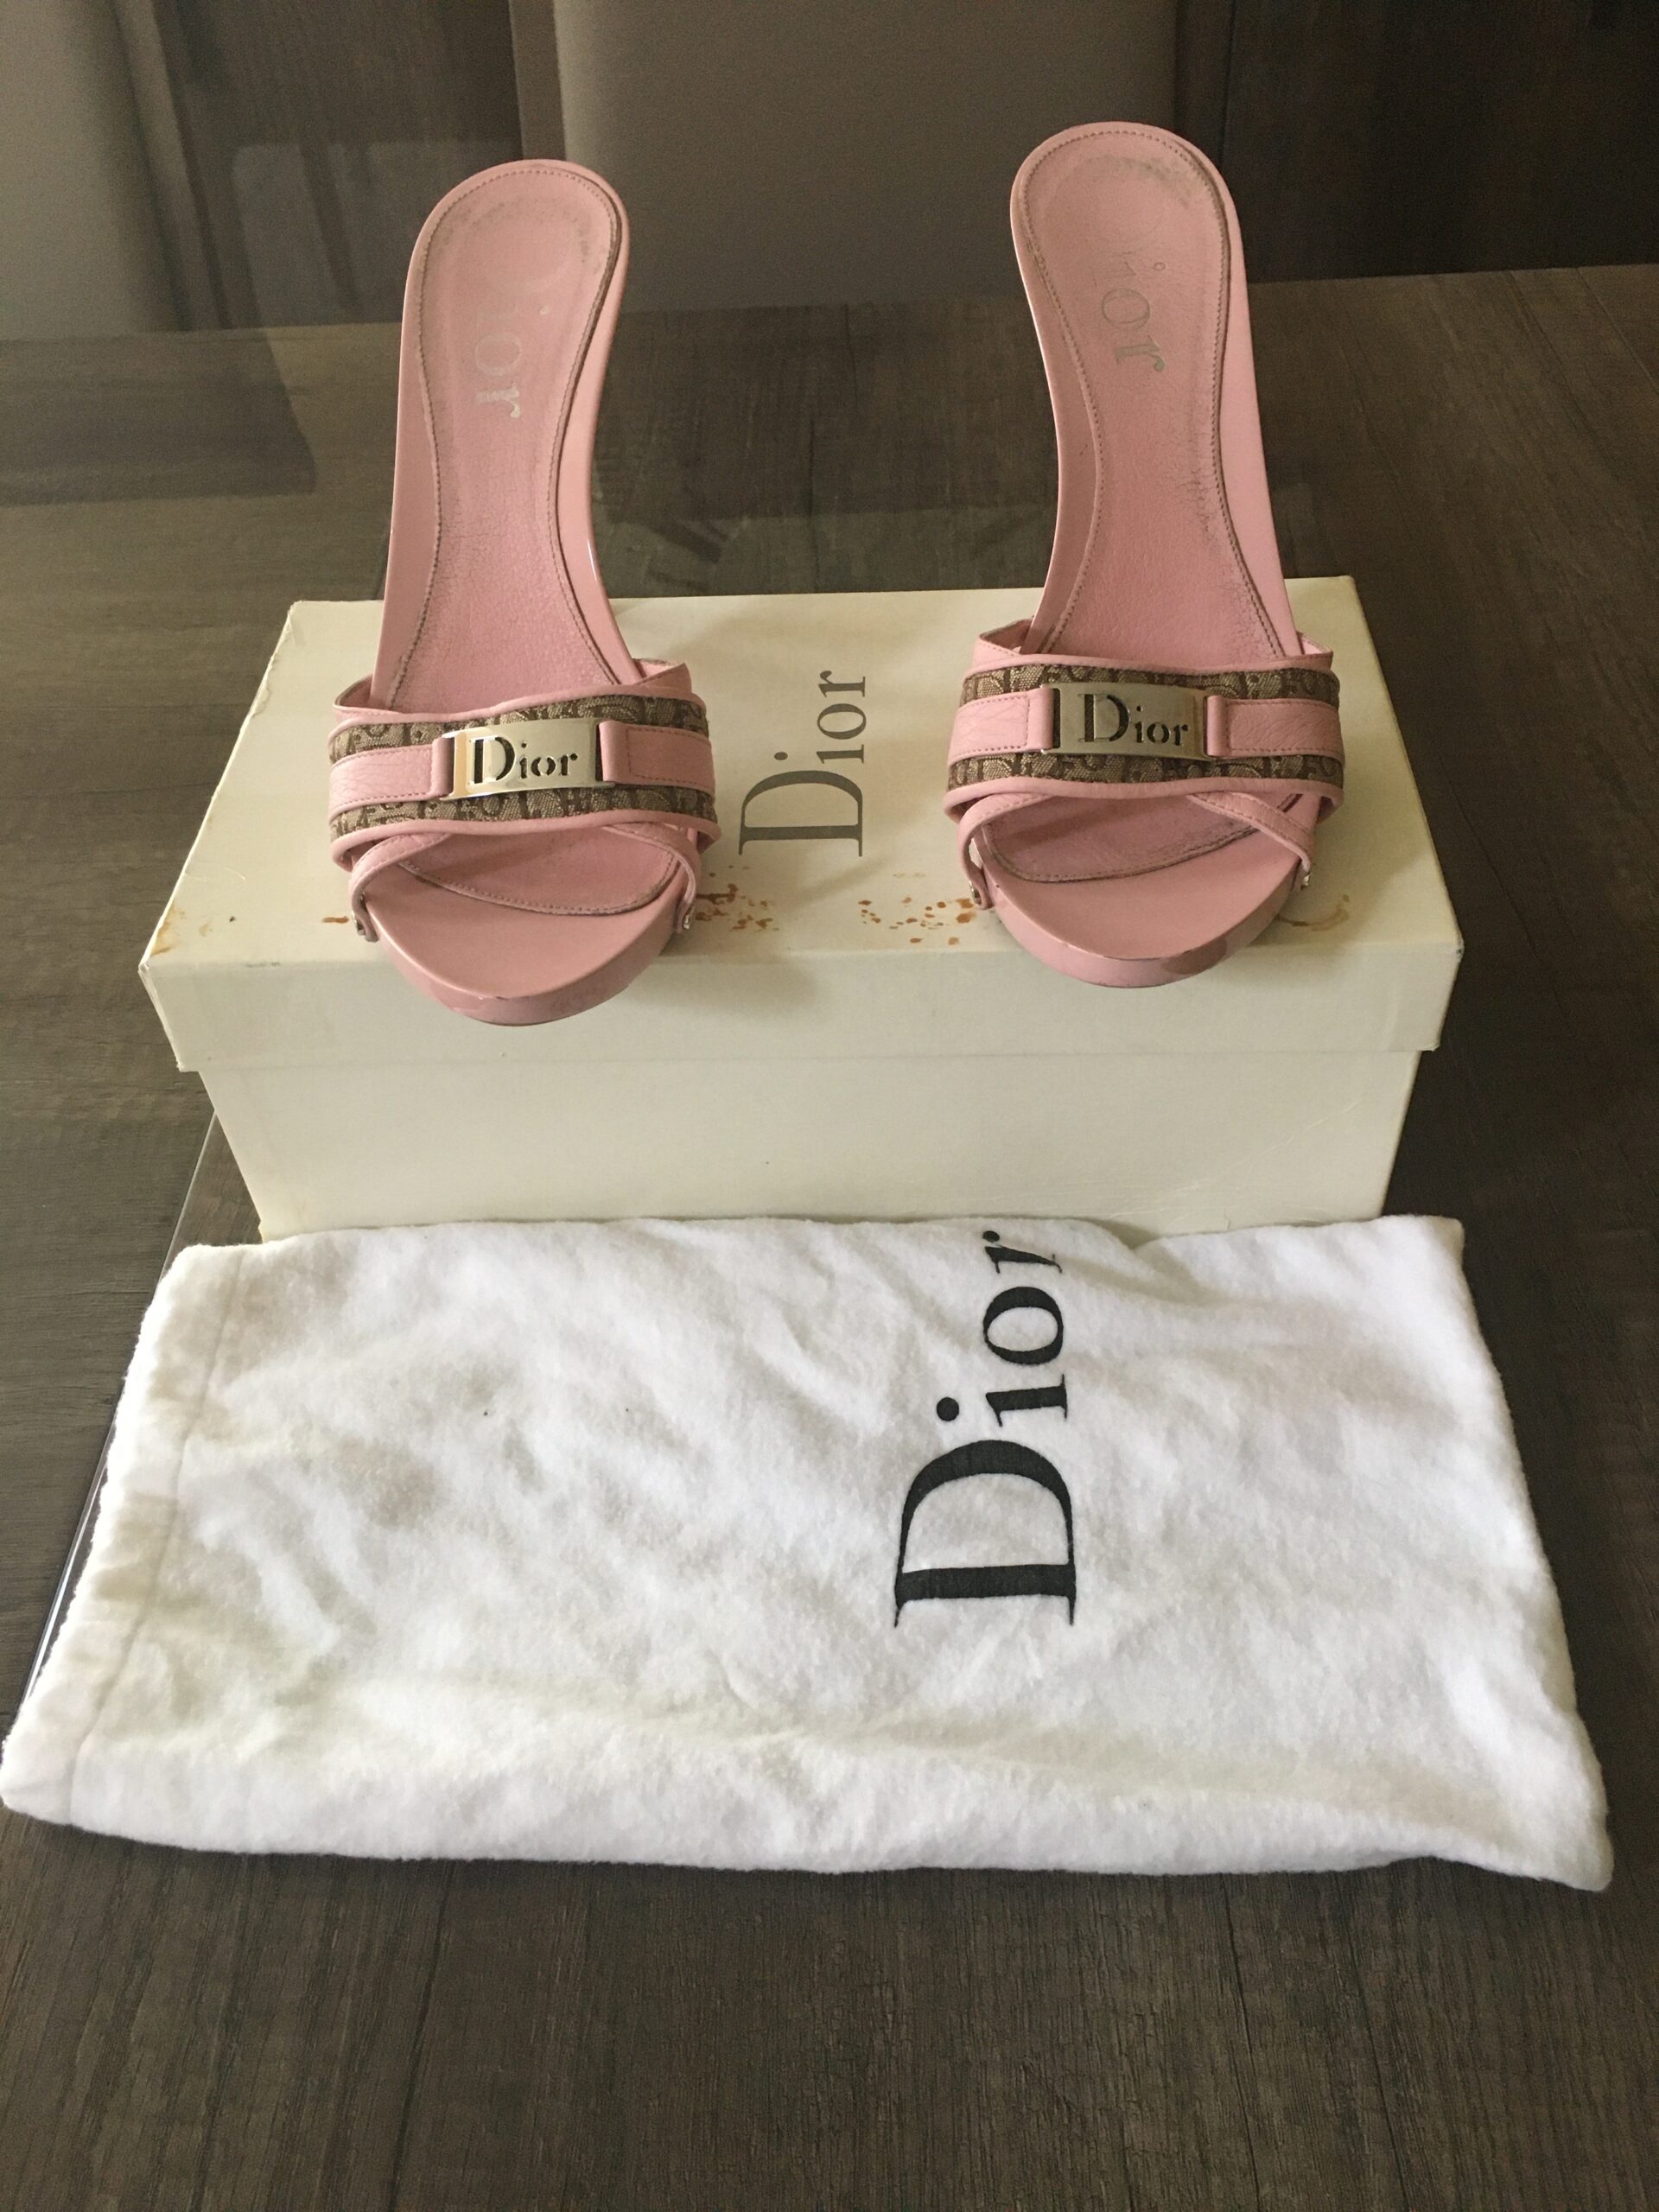 dior monogram shoes